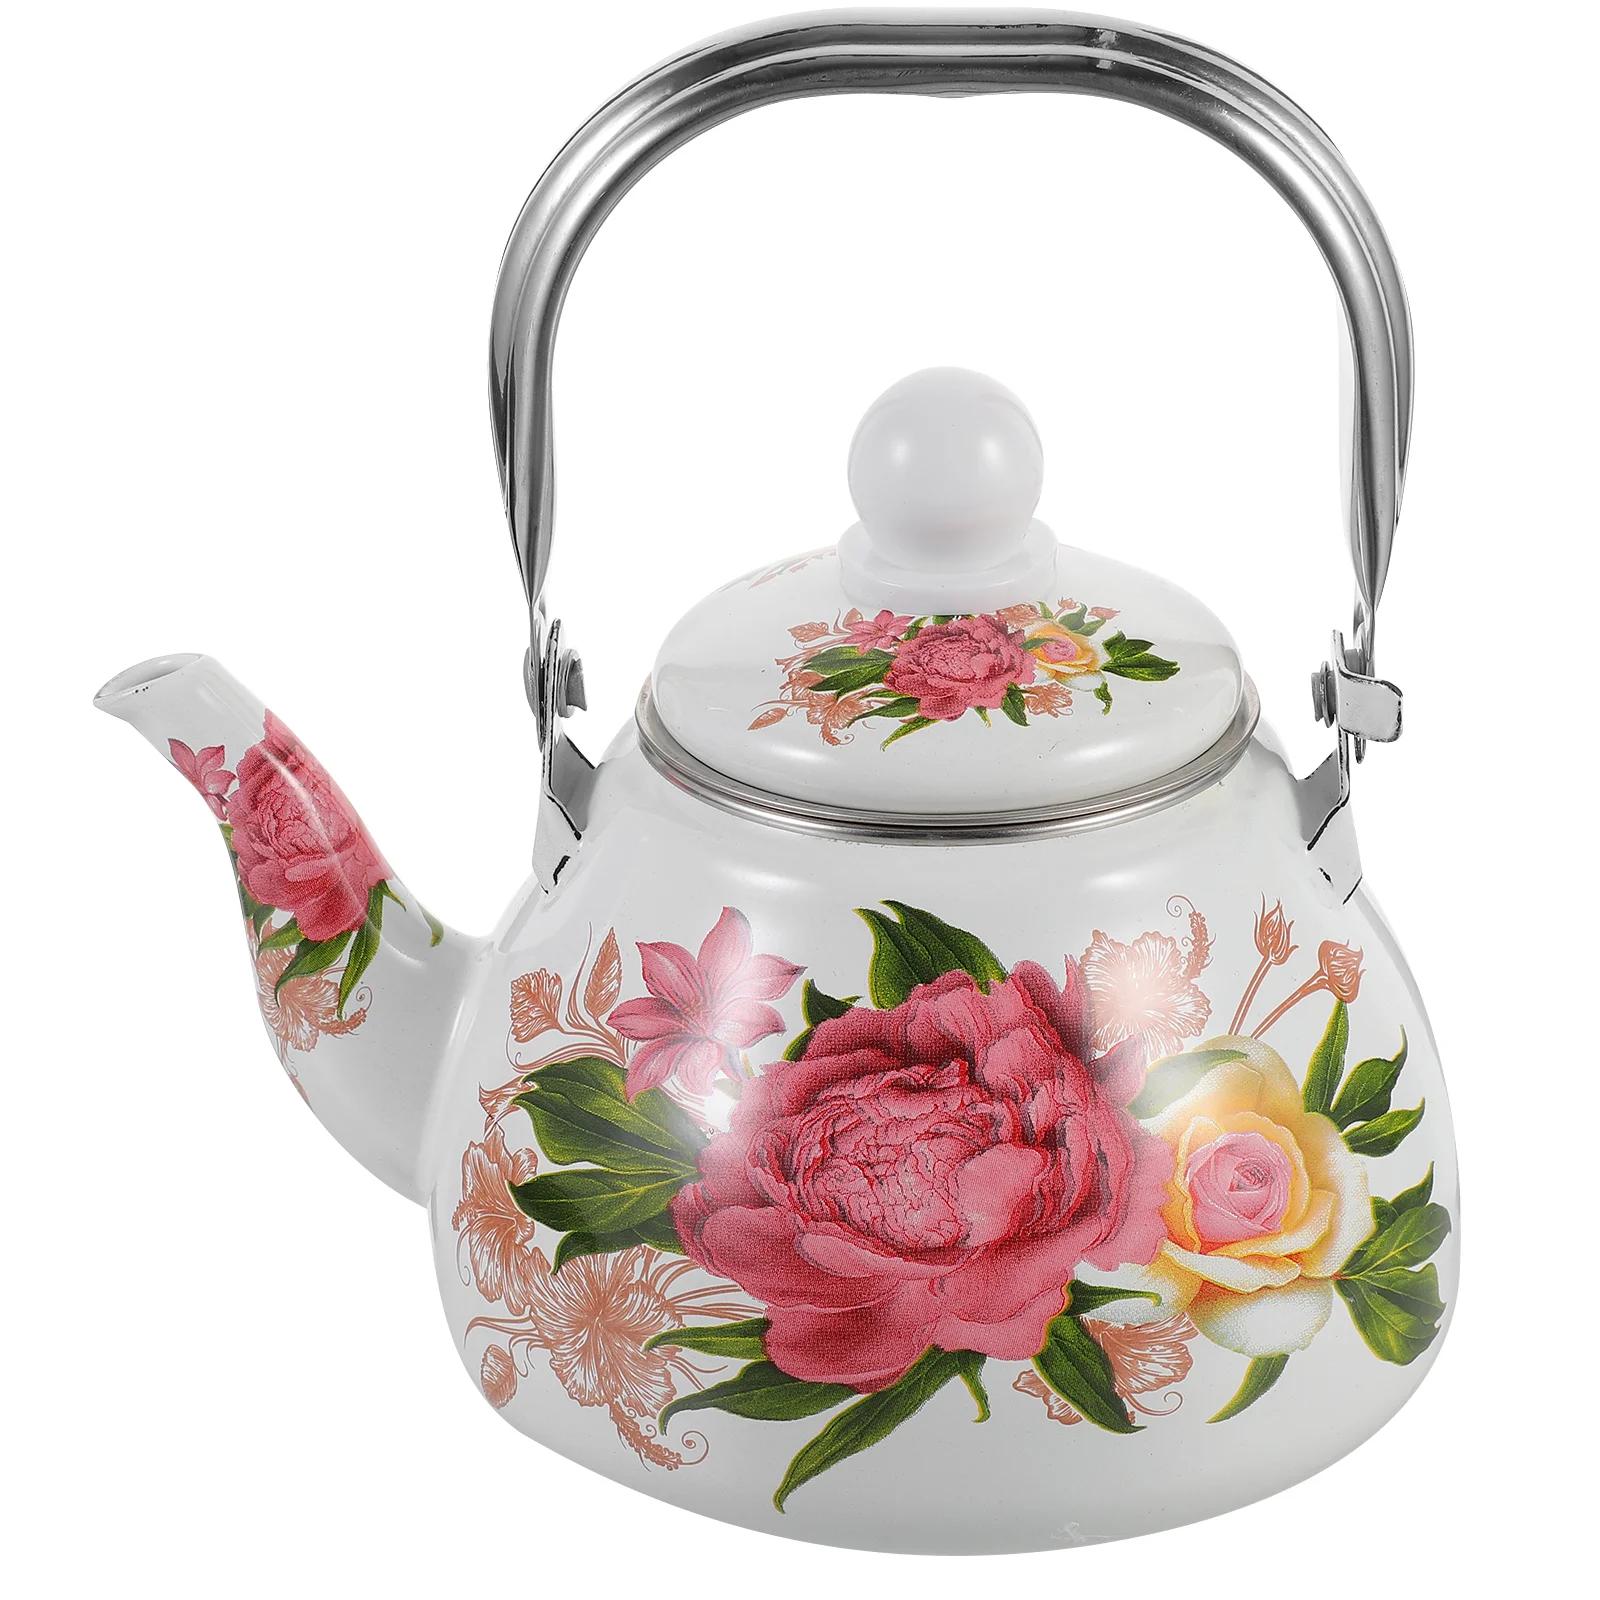 

Enamel Tea Kettle for Stovetop Vintage Floral Pattern Teakettle with Infuser